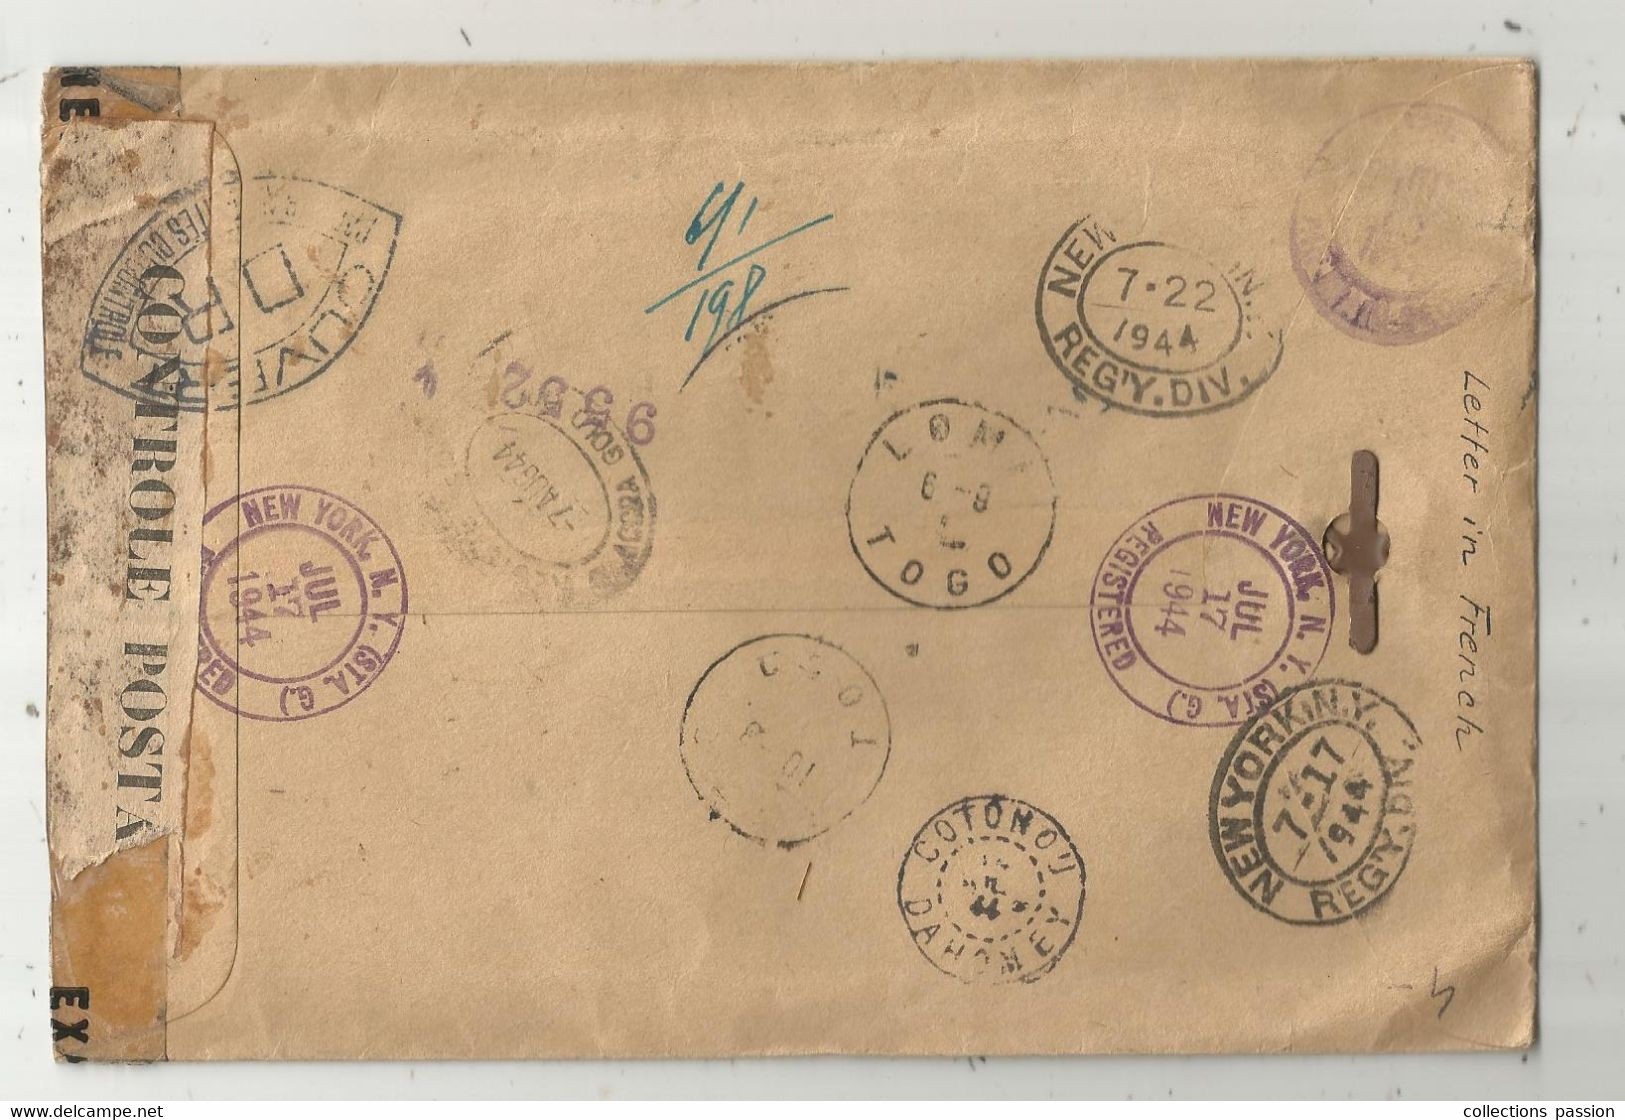 Lettre , Registered , NEW YORK , COTONOU DAHOMEY , LOME TOGO , Controle Postal ,ouvert, 1944 , Frais Fr 1.95 E - Postal History